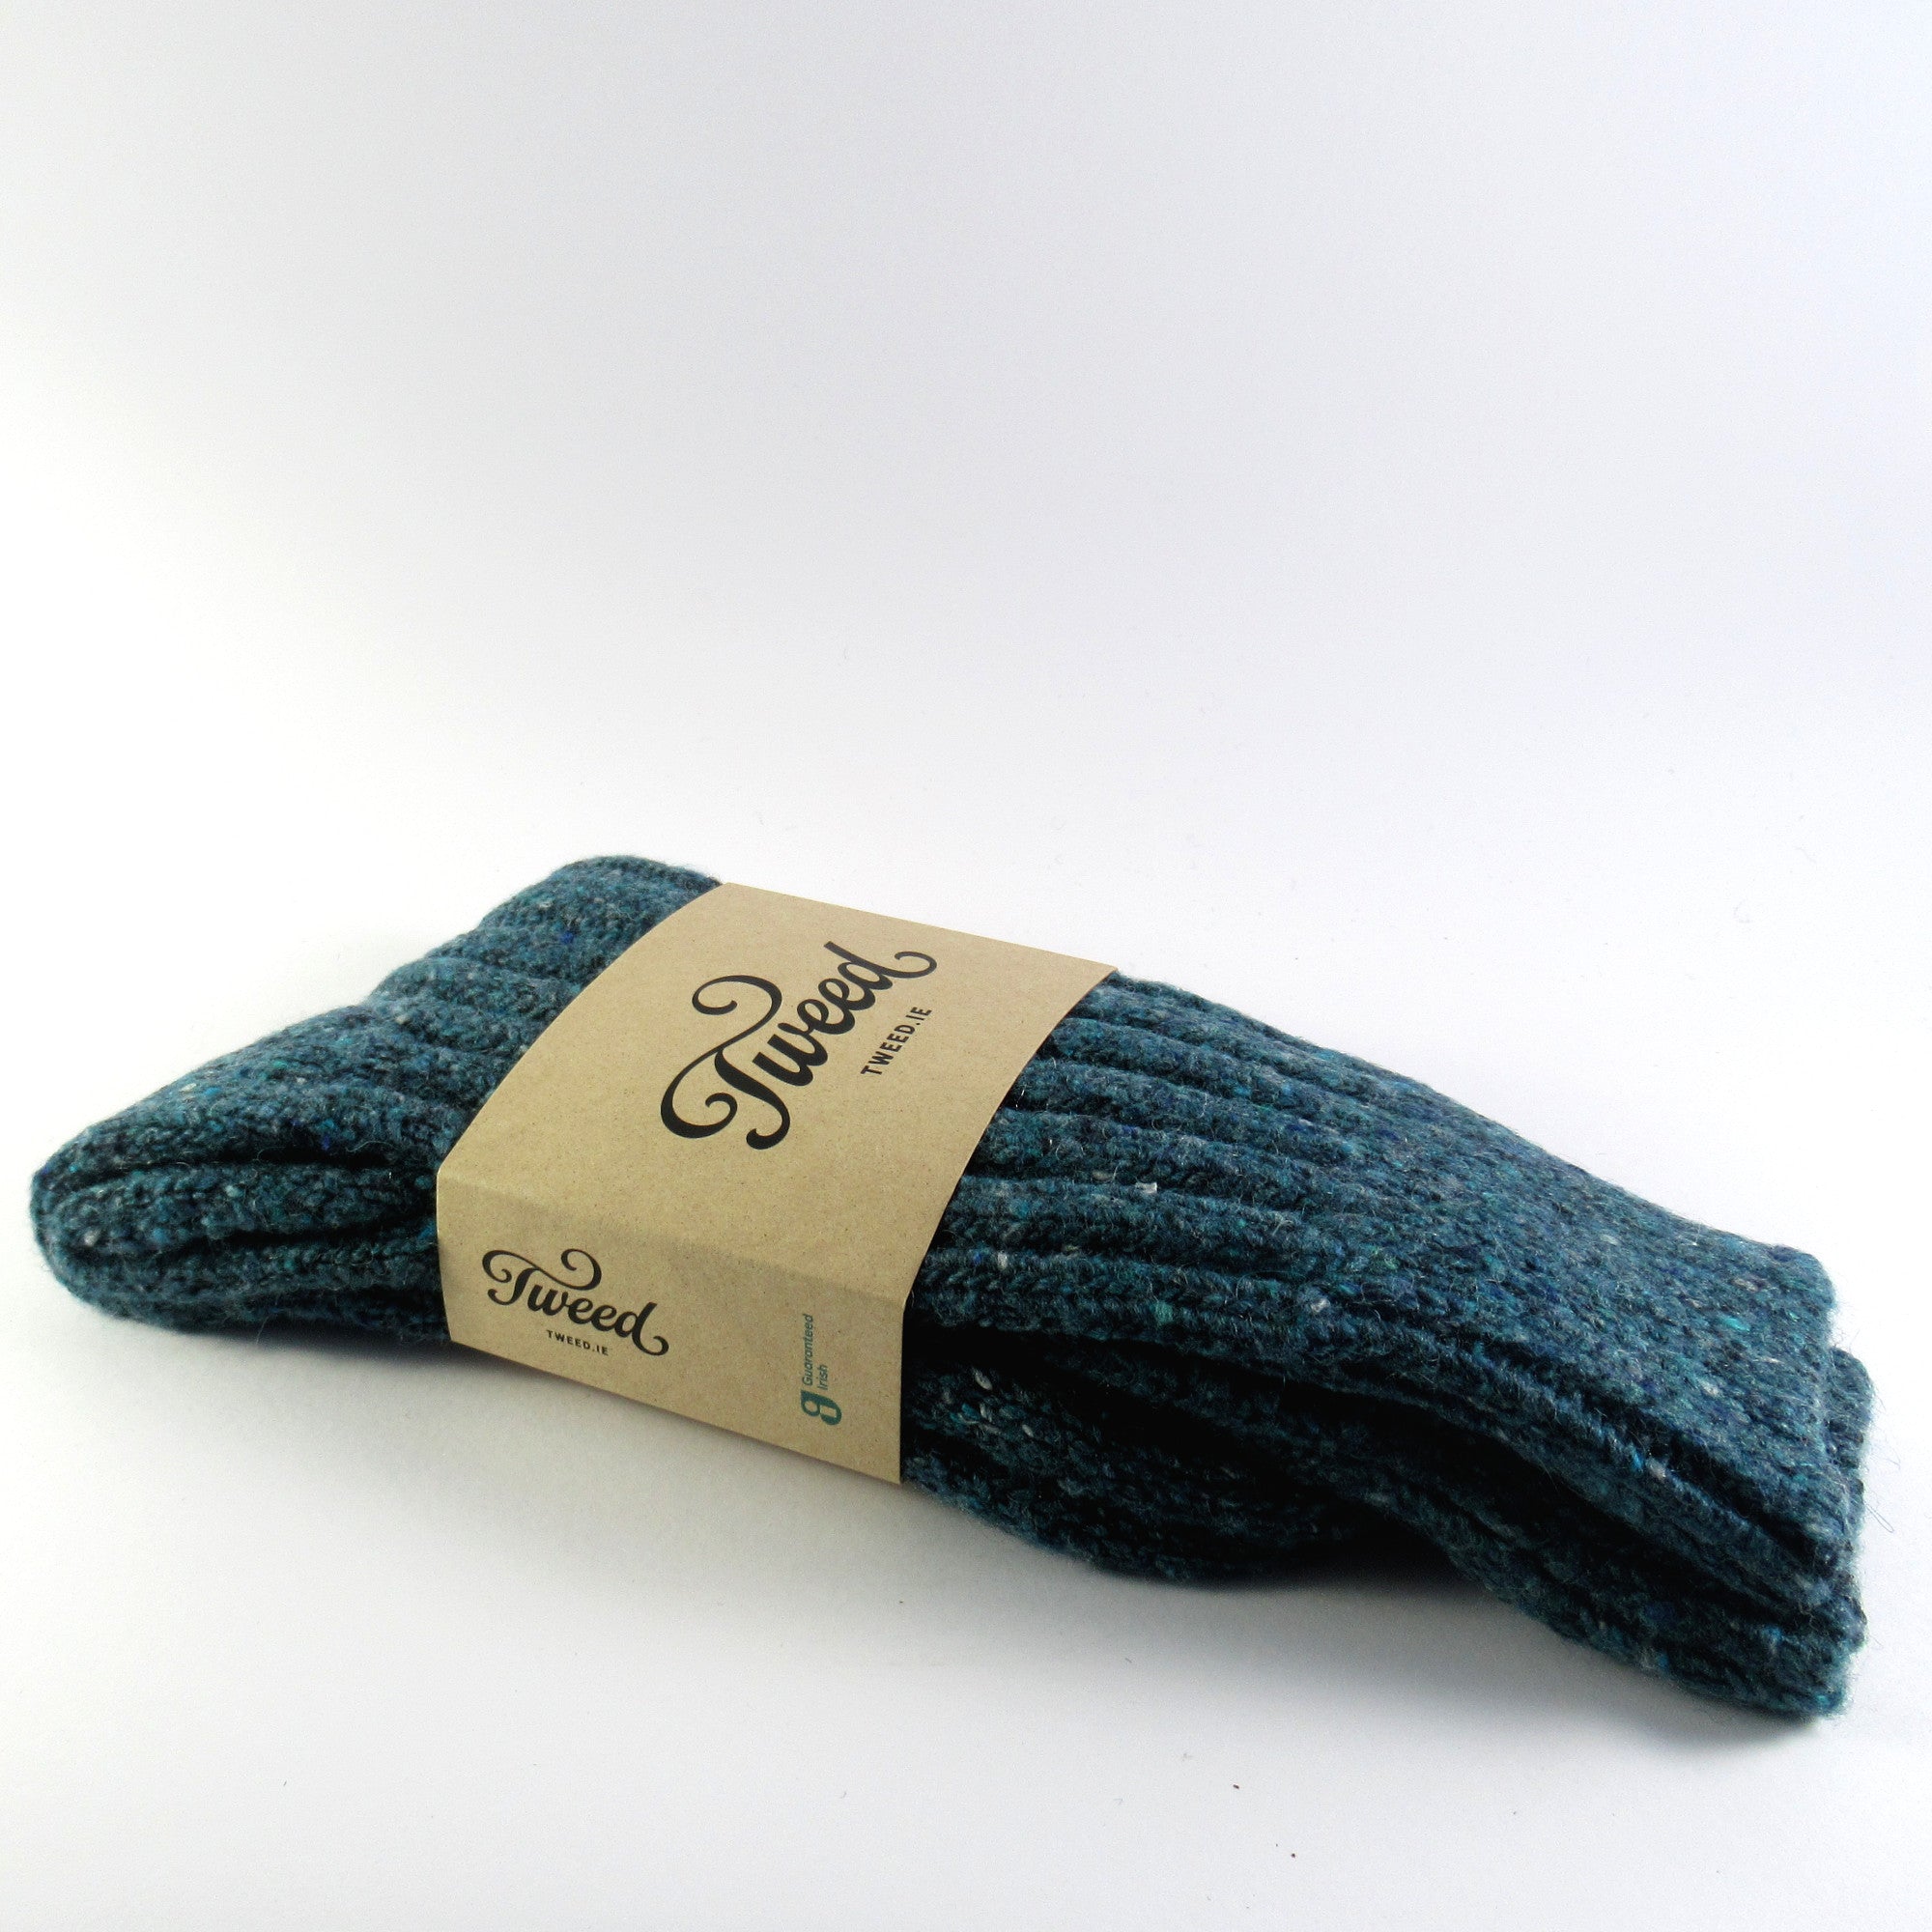 Donegal Wool Socks - Turquoise - Tweed.ie